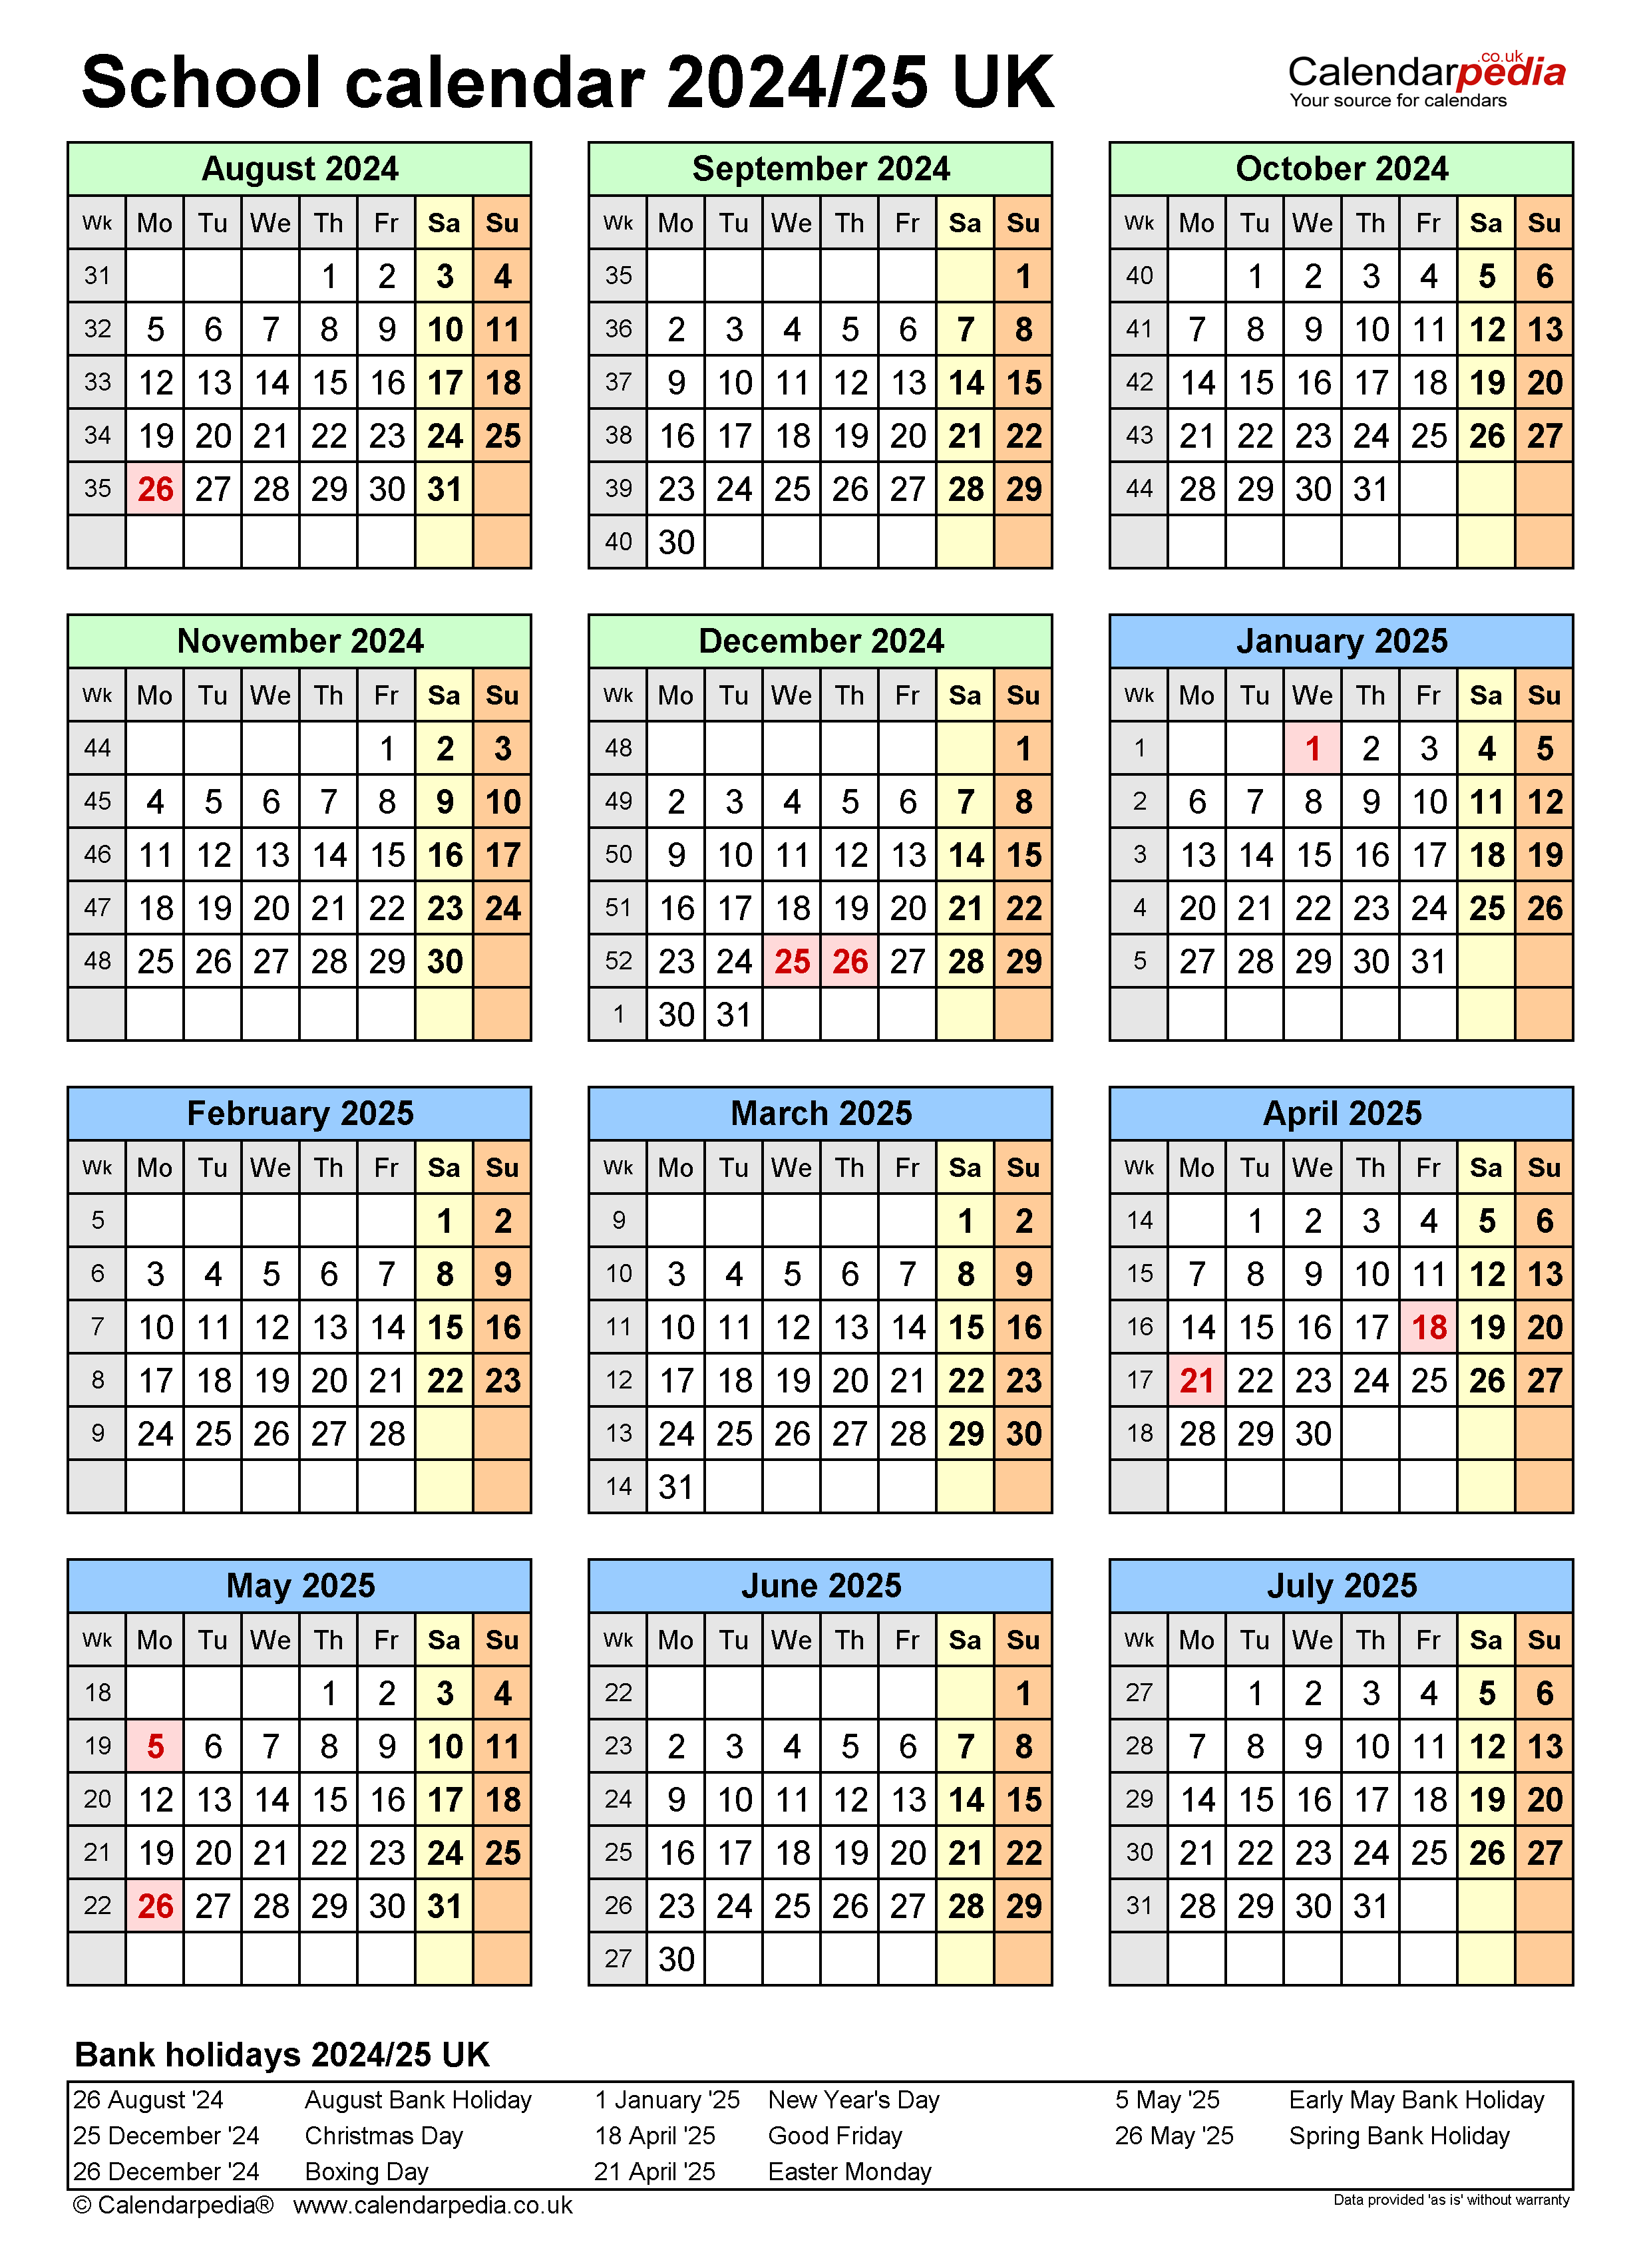 School Holidays 2024 England Ericka Priscilla - Free Printable 2024 Schoo Calendar